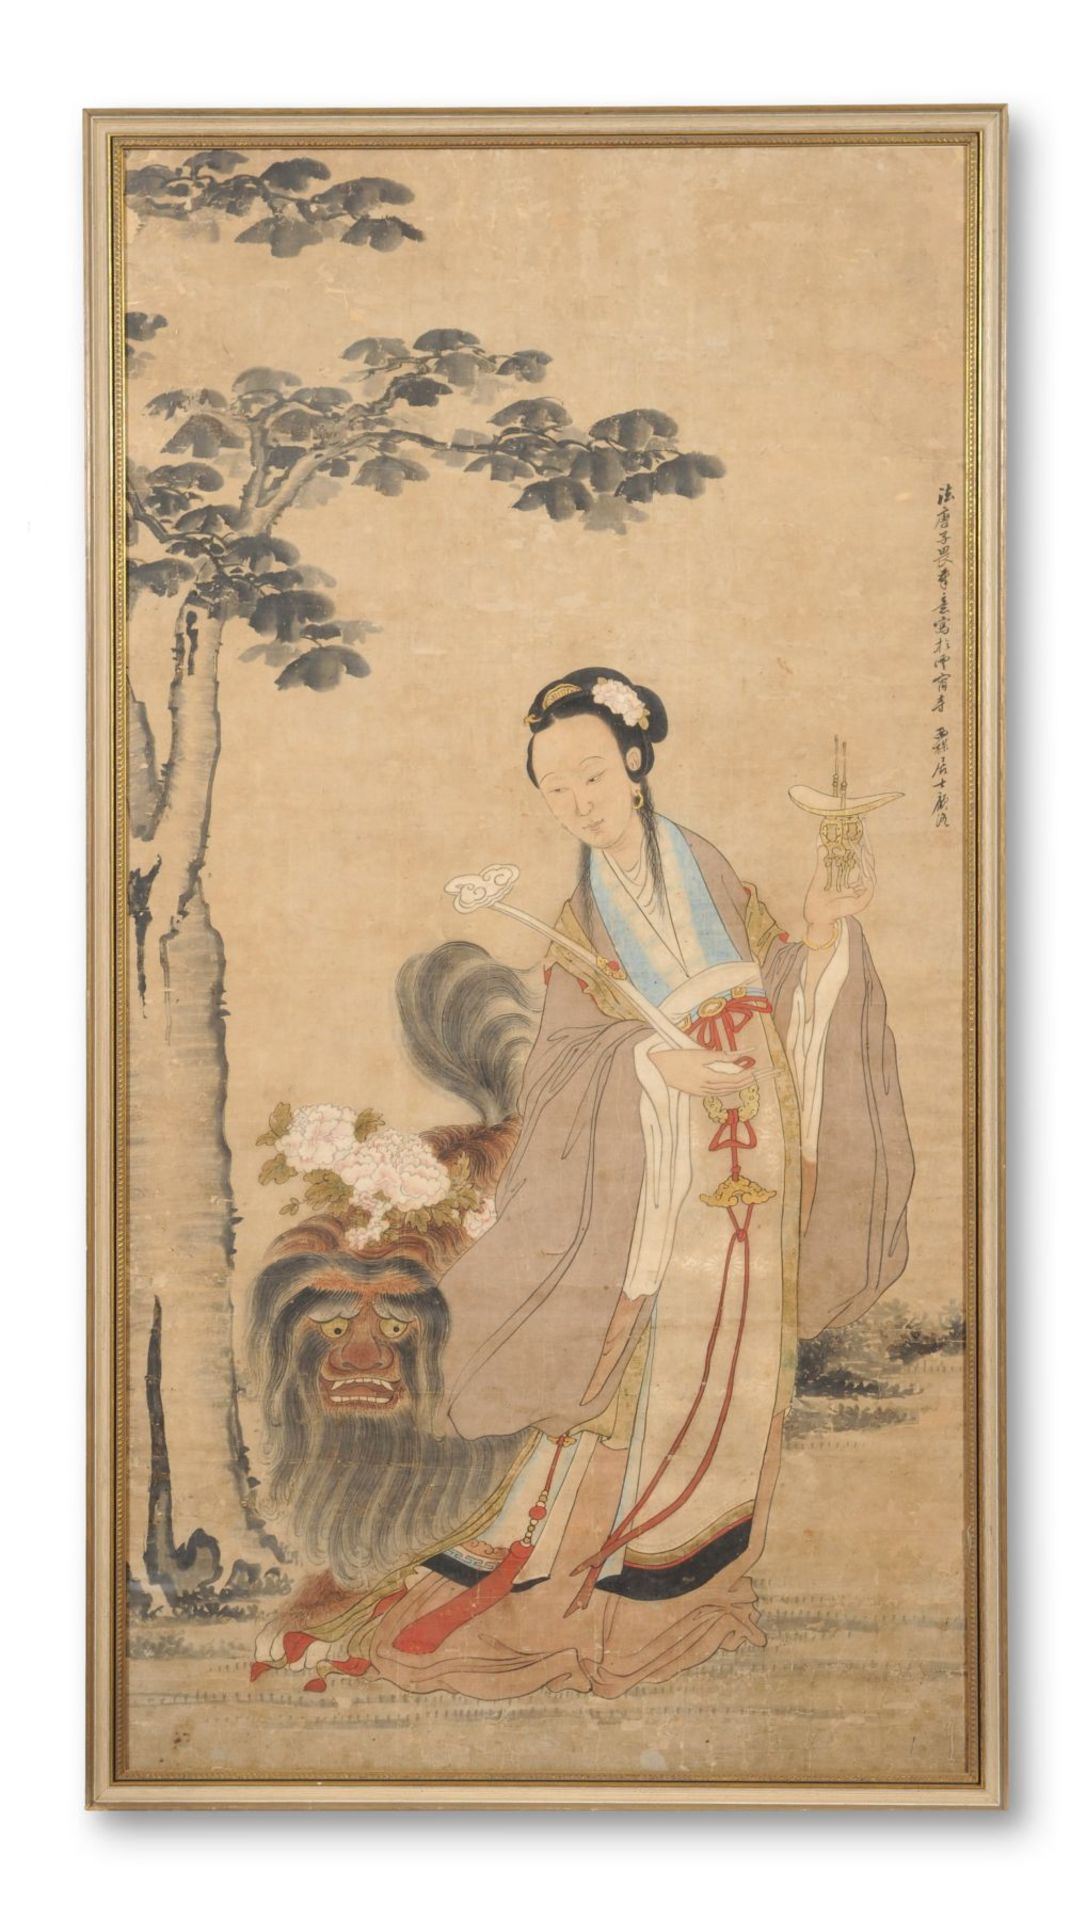 Großes Rollbild "Darstellung einer Himmelsfee mit mythischem Löwen". China. Wohl 18. Jh. Tusche,